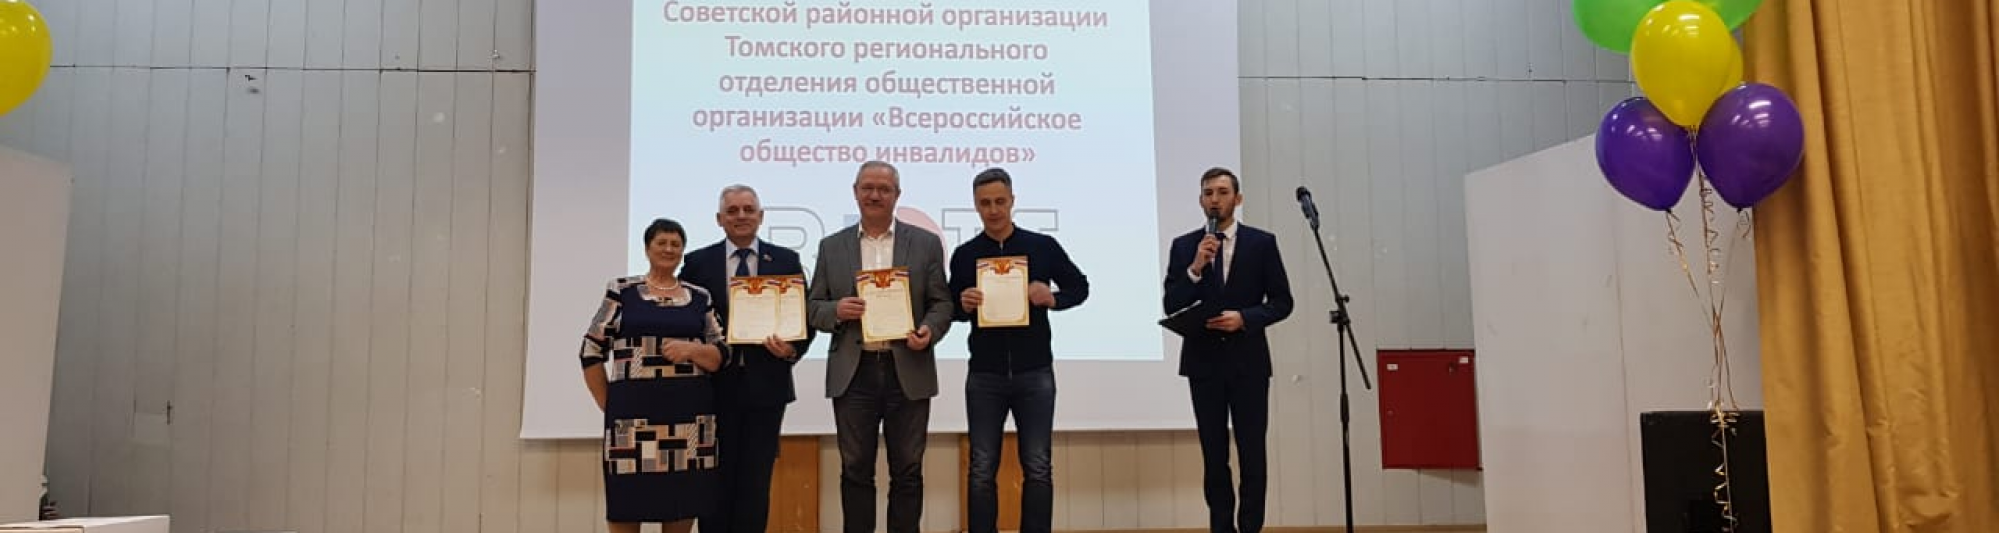 Депутаты поздравили районную организацию «Всероссийского общества инвалидов» 